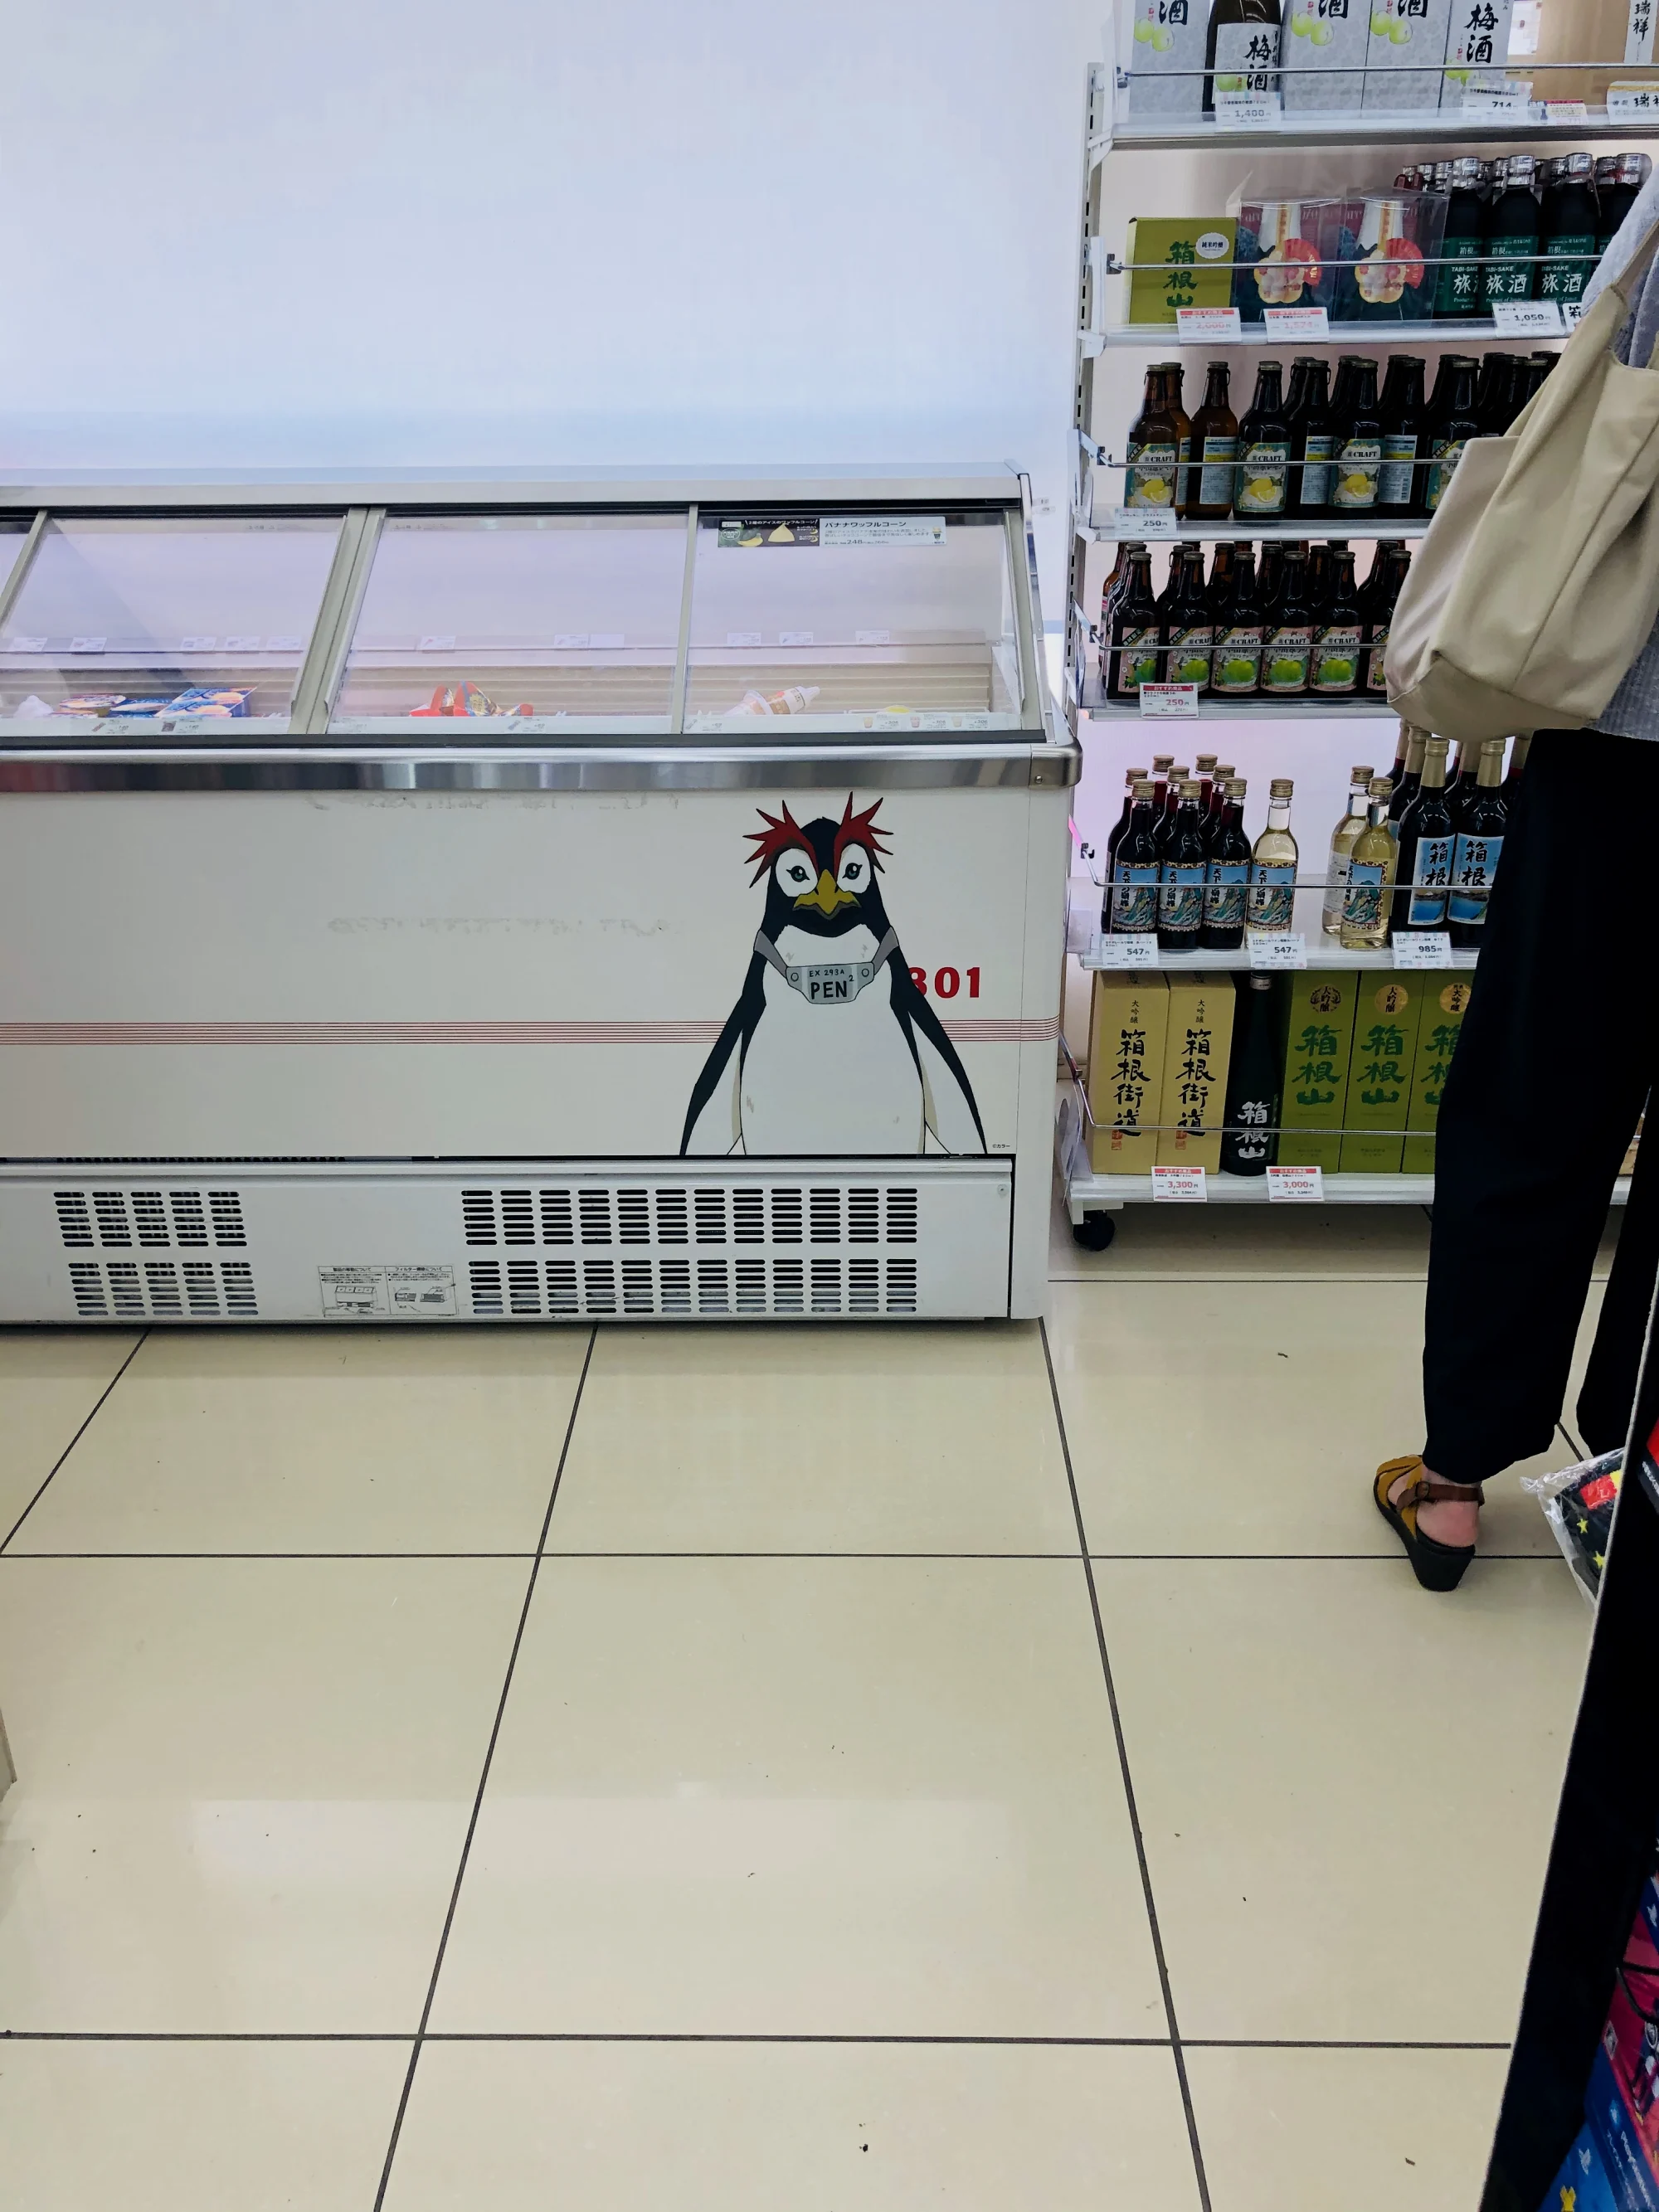 这个小企鹅真的很用心了。